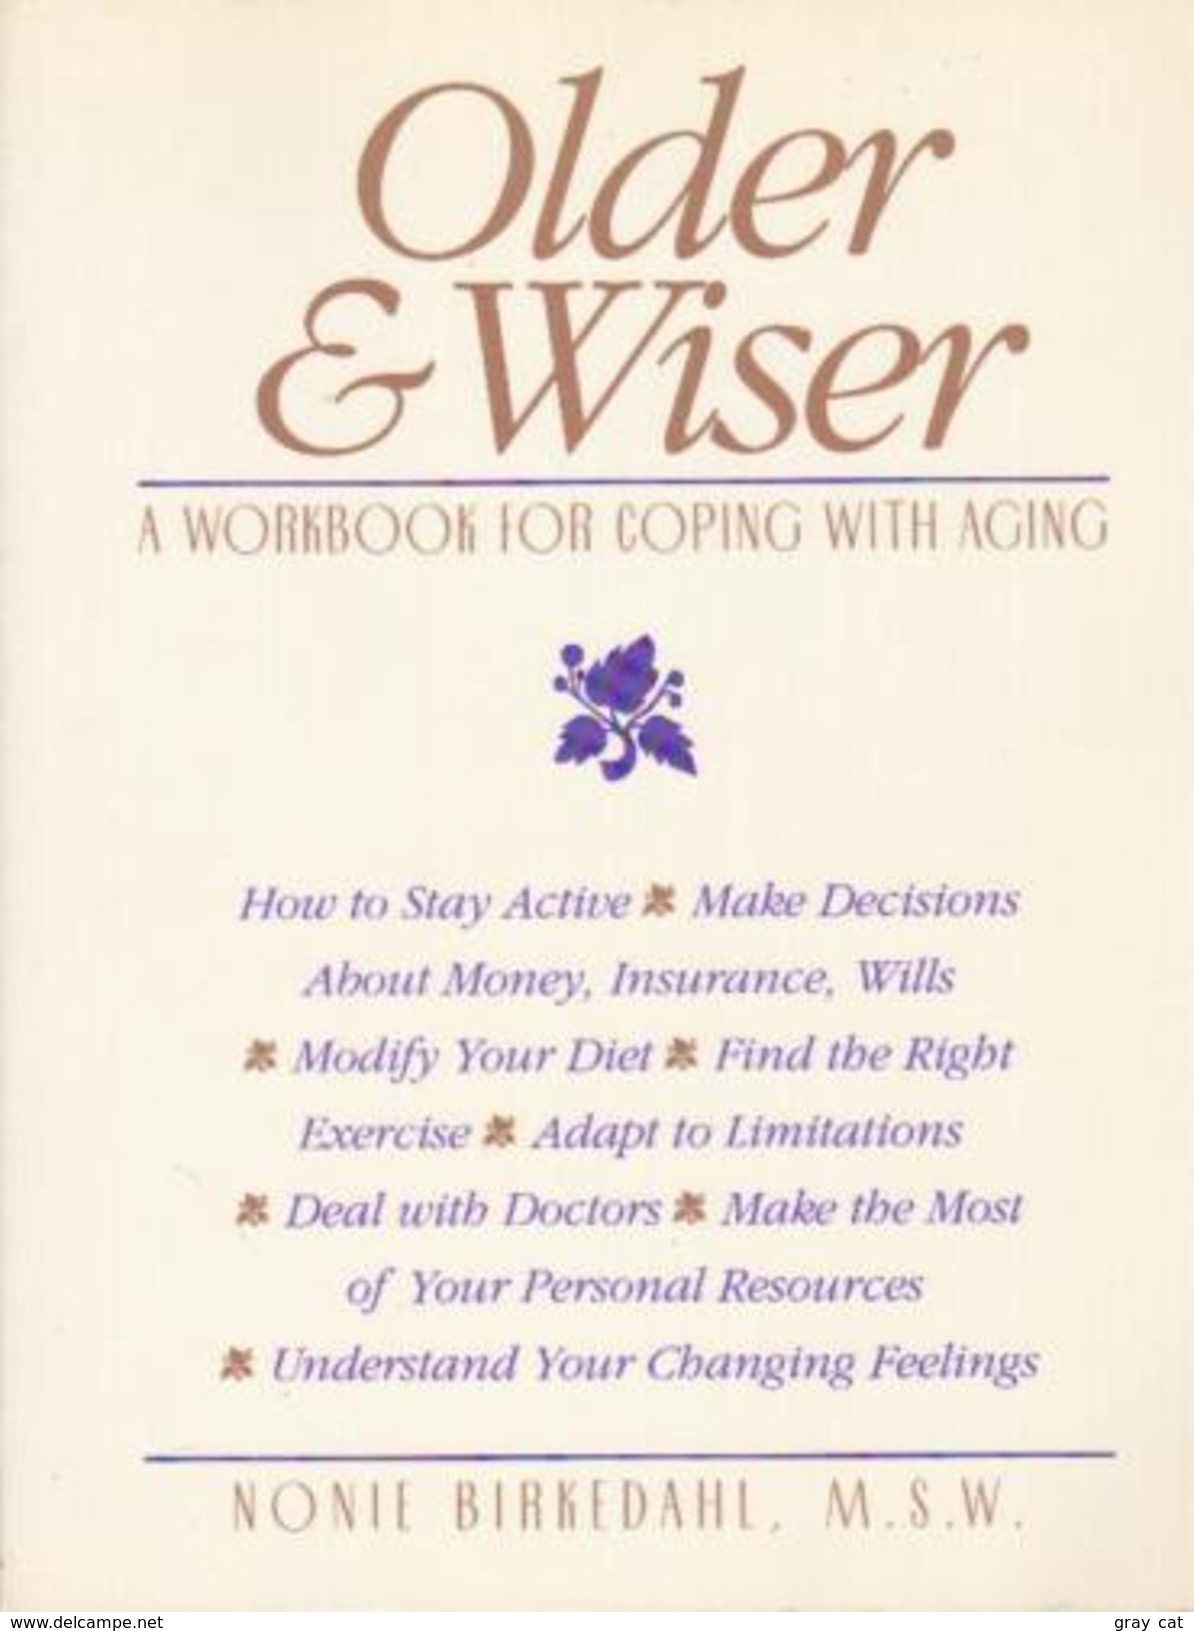 Older & Wiser: A Workbook For Coping With Aging By Nonie Birkedahl (ISBN 9781879237100) - Medizin/Gesundheit